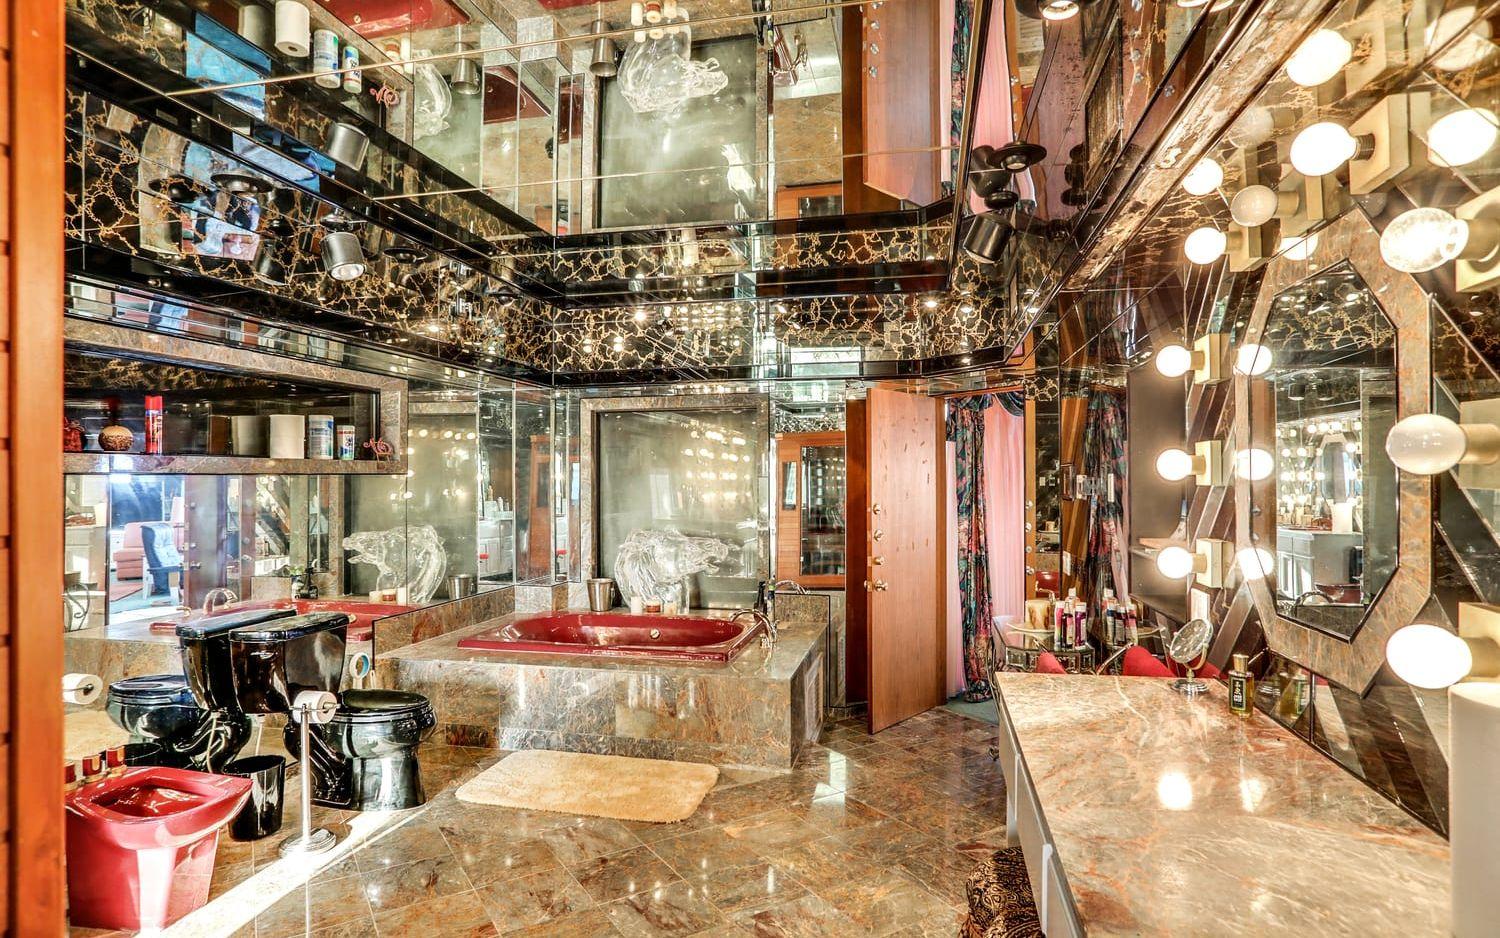 Det här badrummet tillhör master suite. Det har fått en udda inredning med speglar i taket, en  bubbelpool, bidé och tvättställ i rött och en svart toalett. När man ligger i badet håller ett stort glasdjur en sällskap.